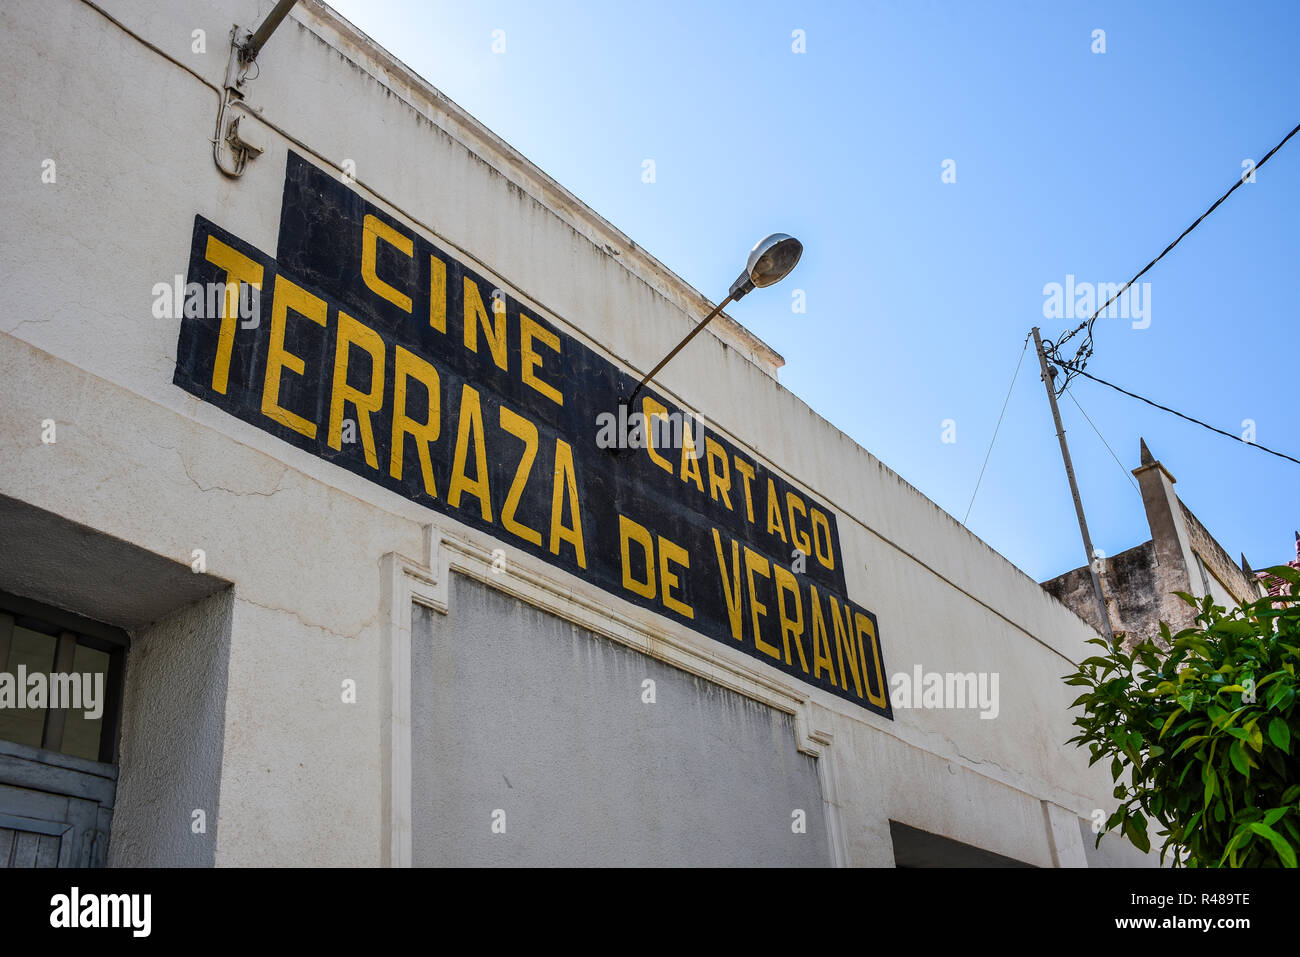 Cartago viejo Cine, terraza de verano, imágenes de cine, fotografía, cine en casa GuardamarGuardamar del Segura, Costa Blanca, España Foto de stock